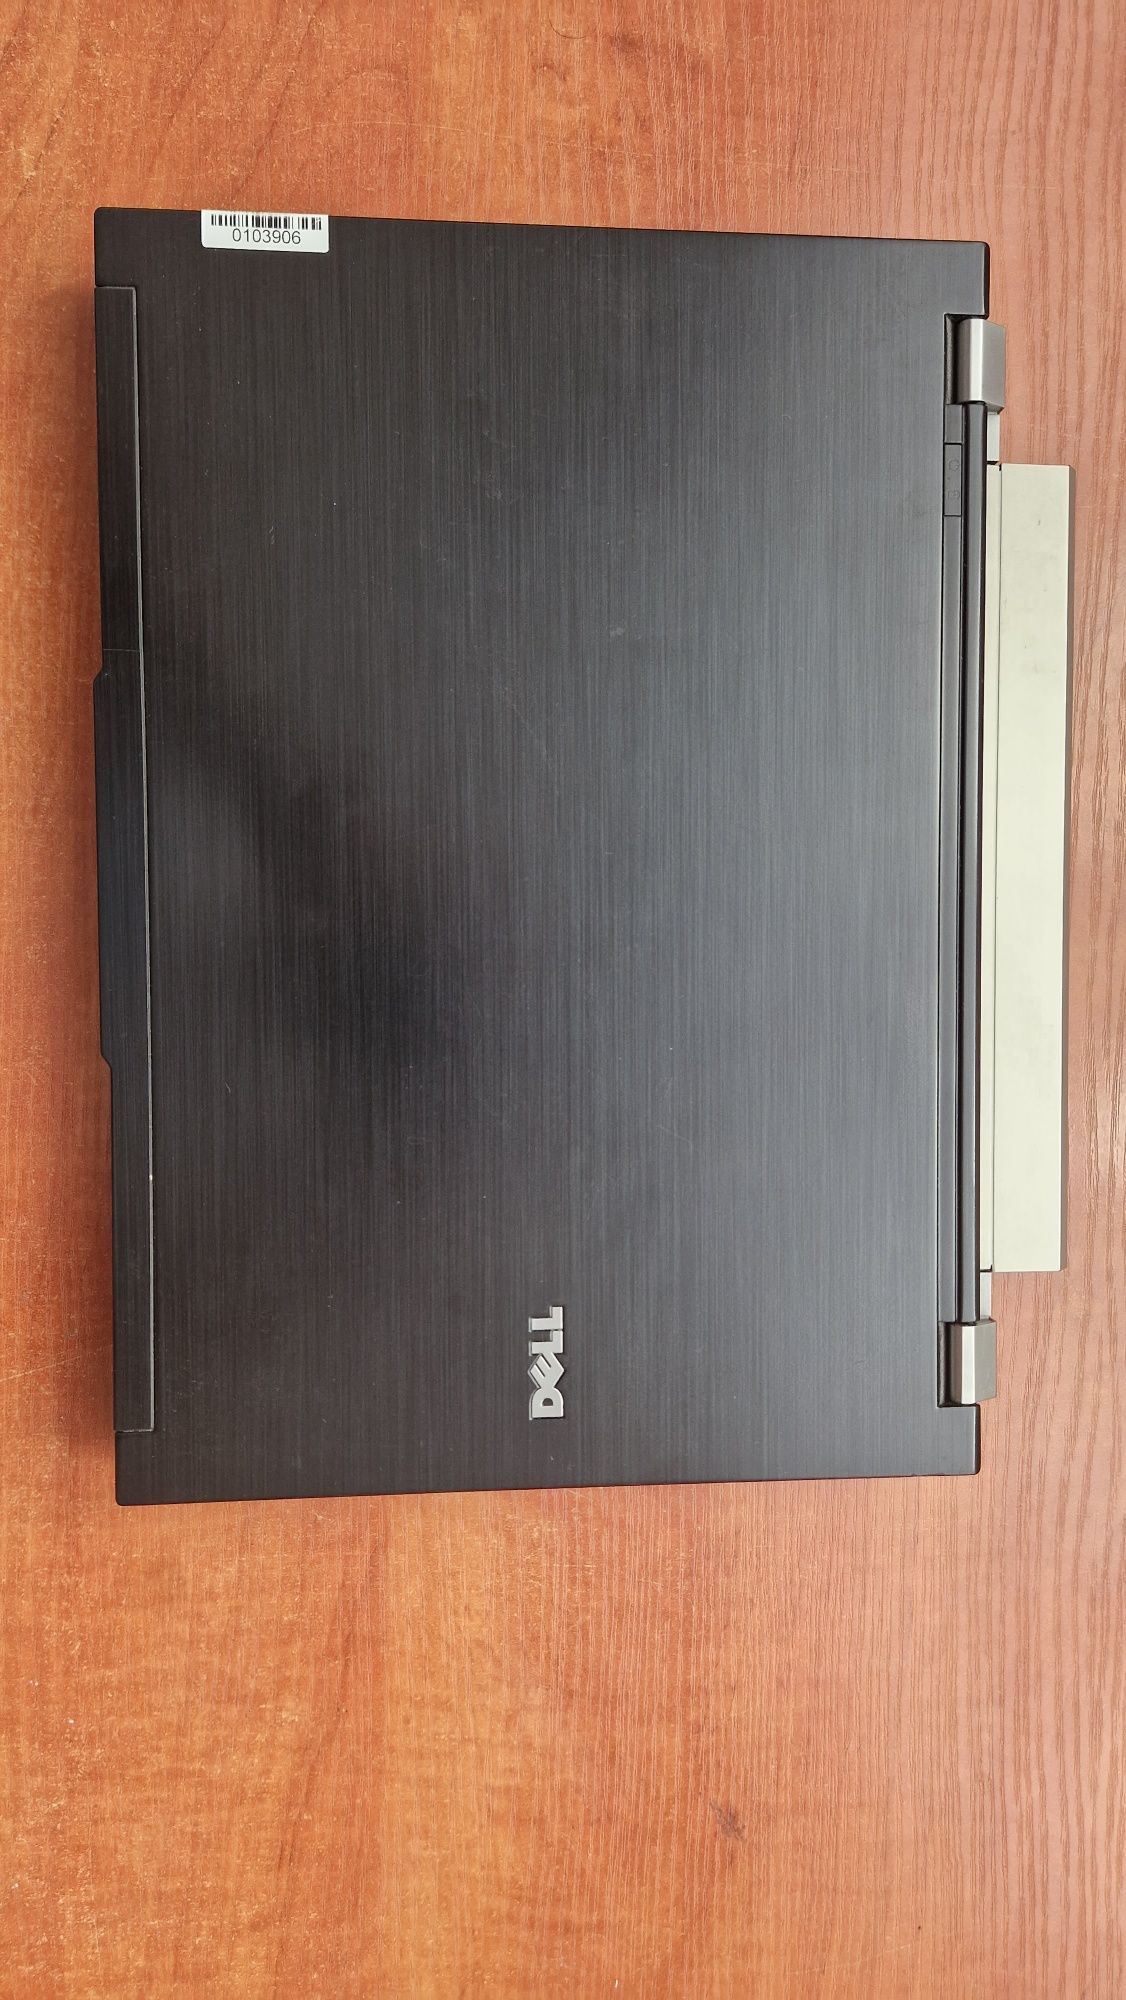 Laptop Dell latitude e4300